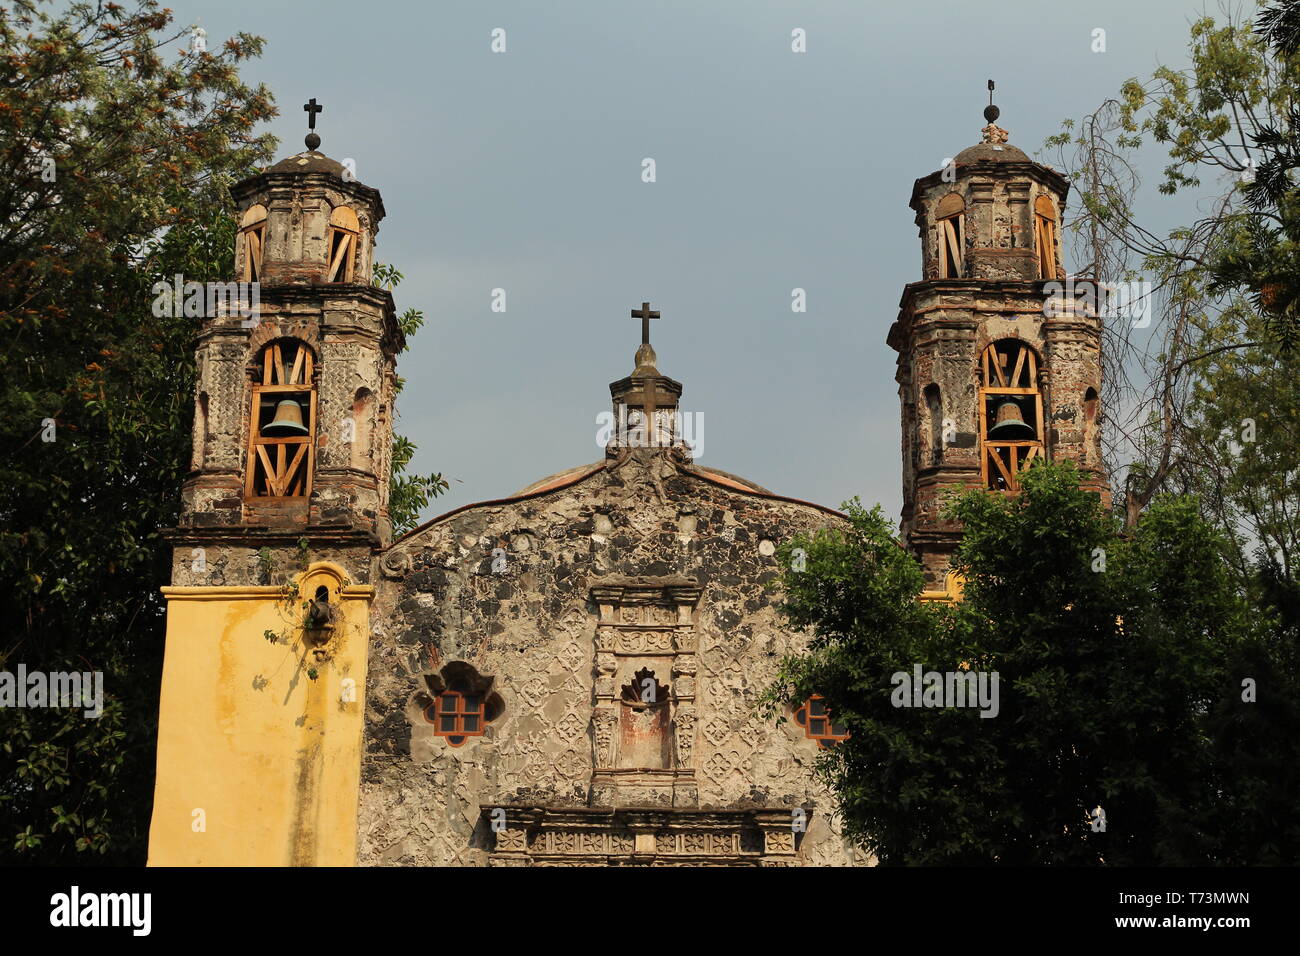 Coyoacan borough, Mexico city. Stock Photo